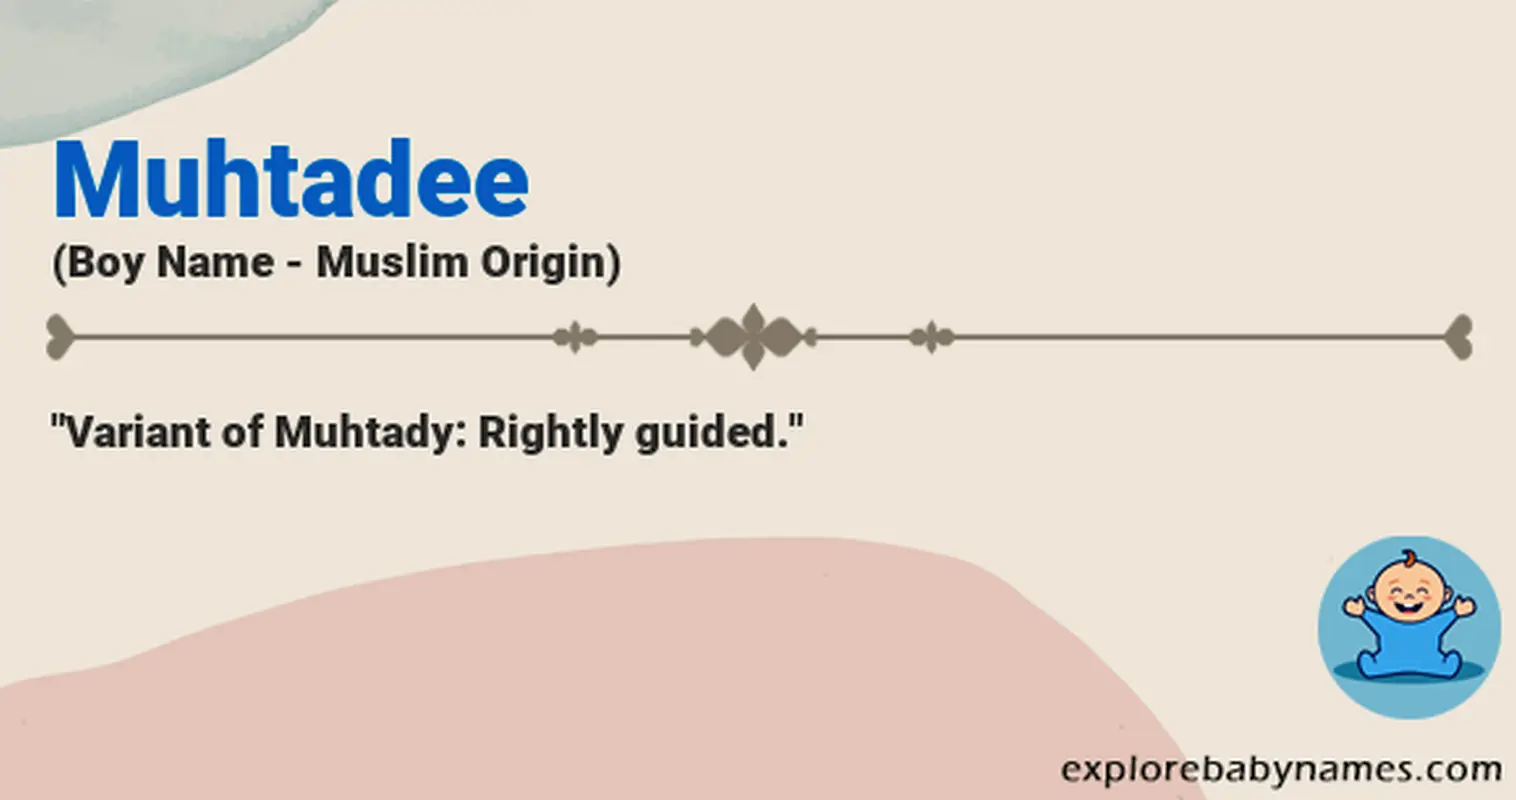 Meaning of Muhtadee